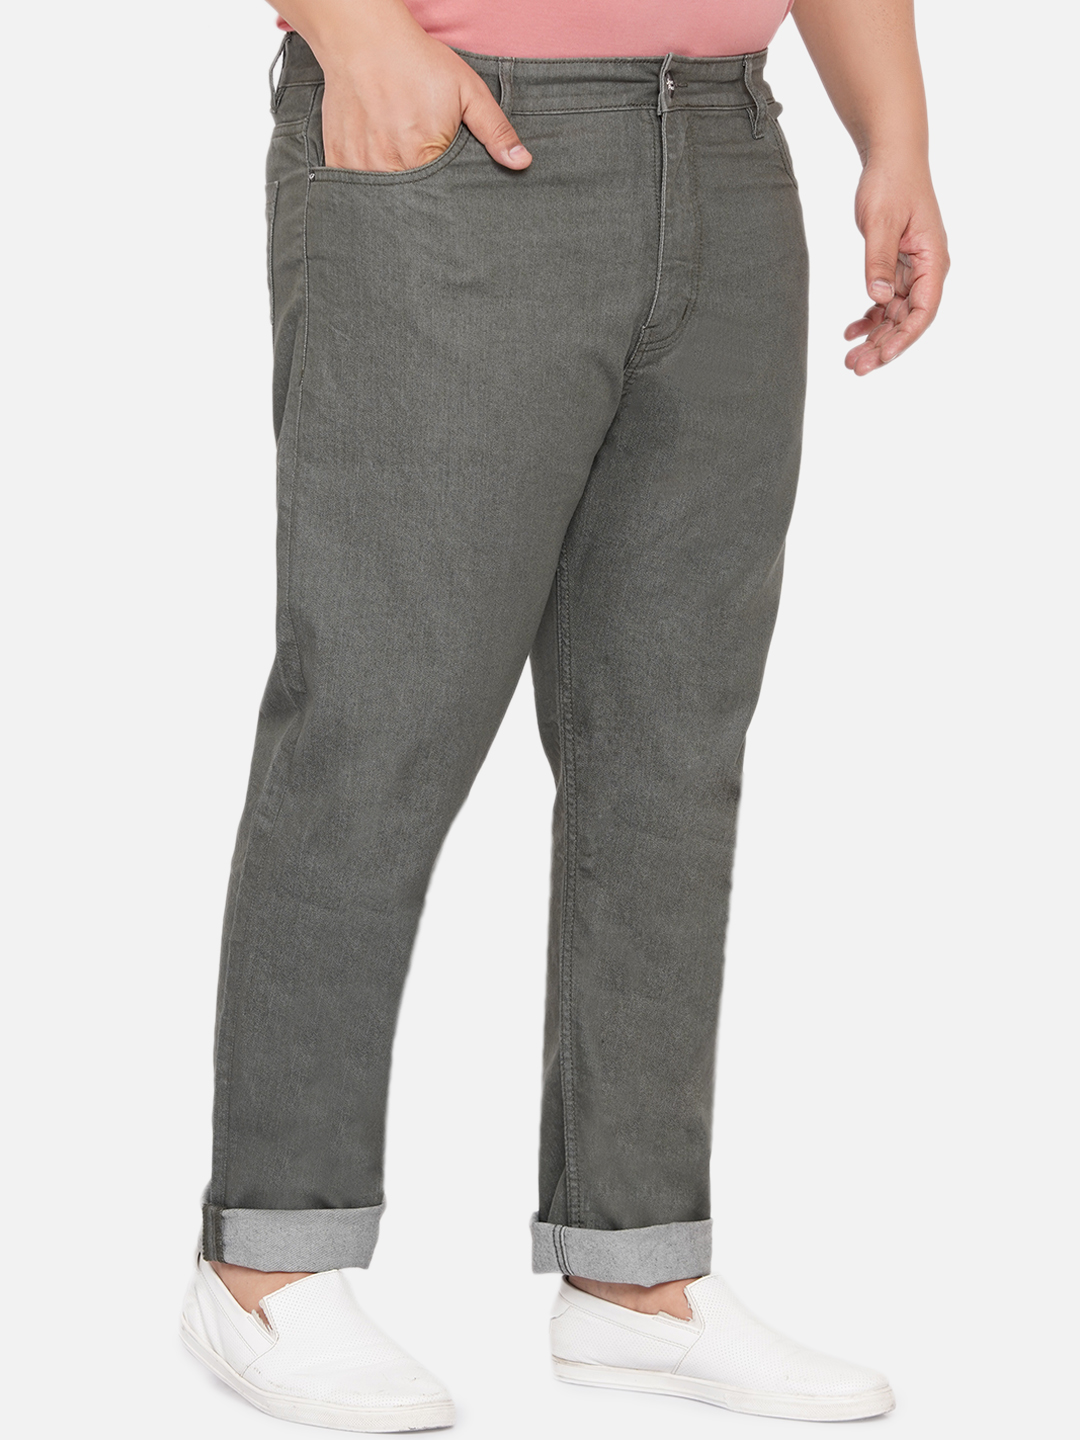 bottomwear/jeans/JPJ12060A/jpj12060a-3.jpg